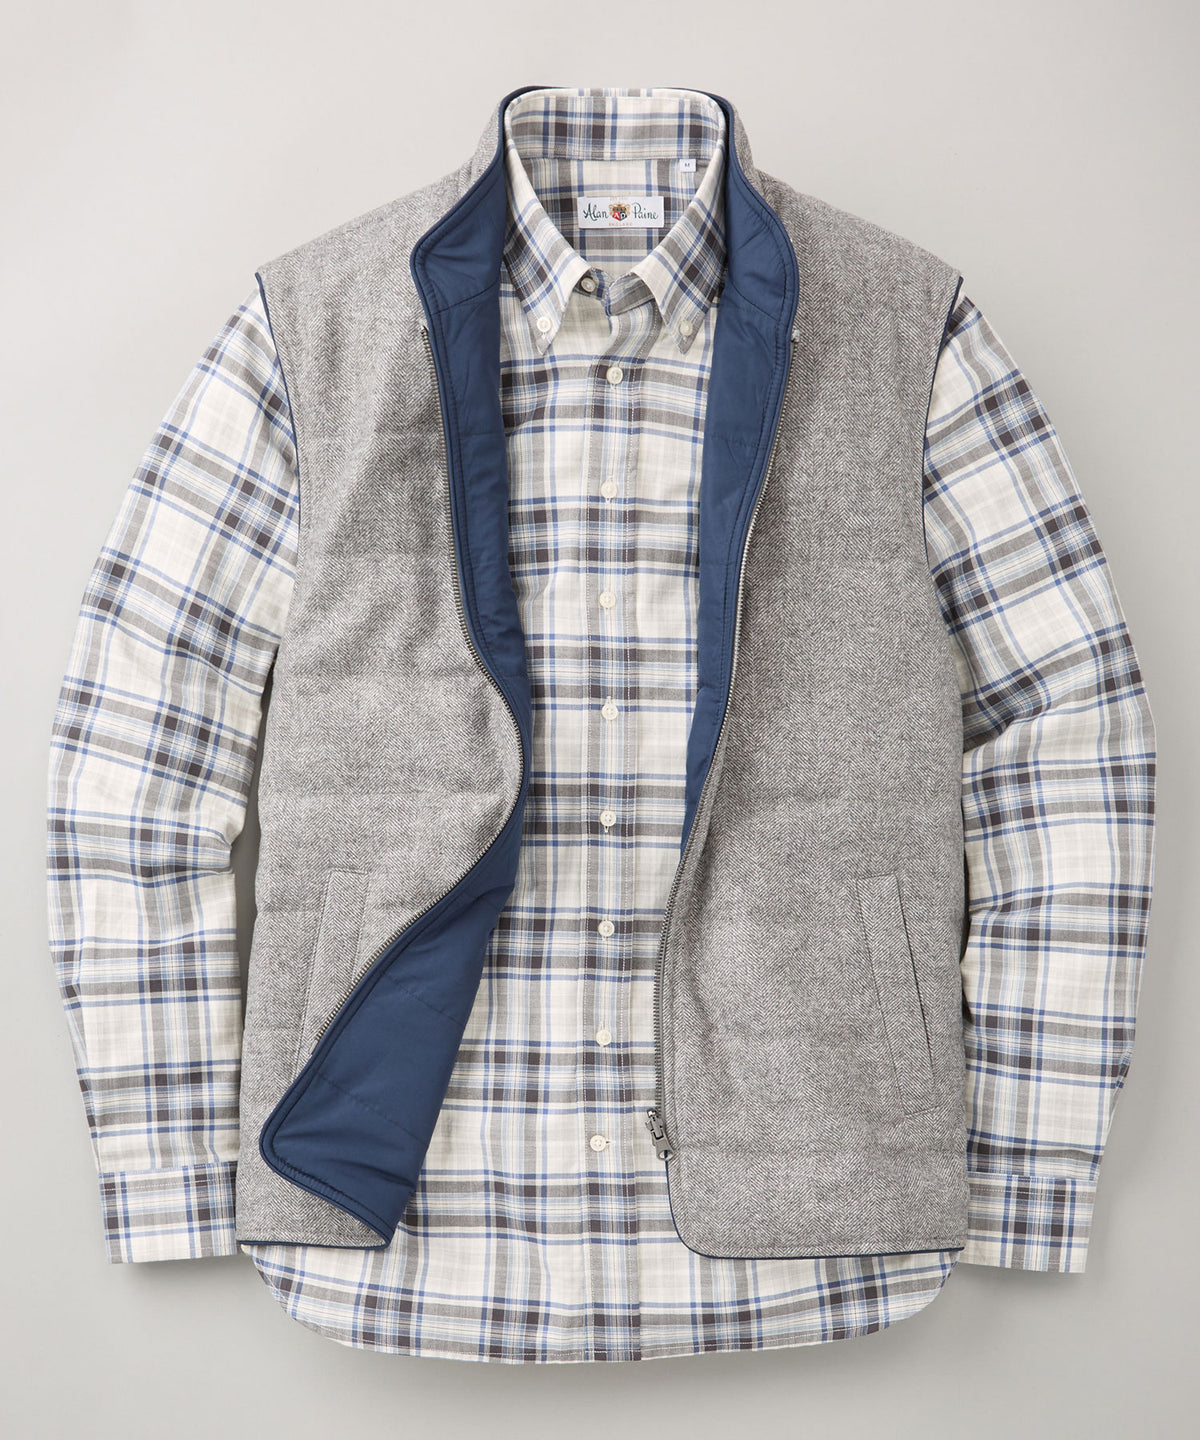 Reversible Quilted Wool Zip-Front Vest